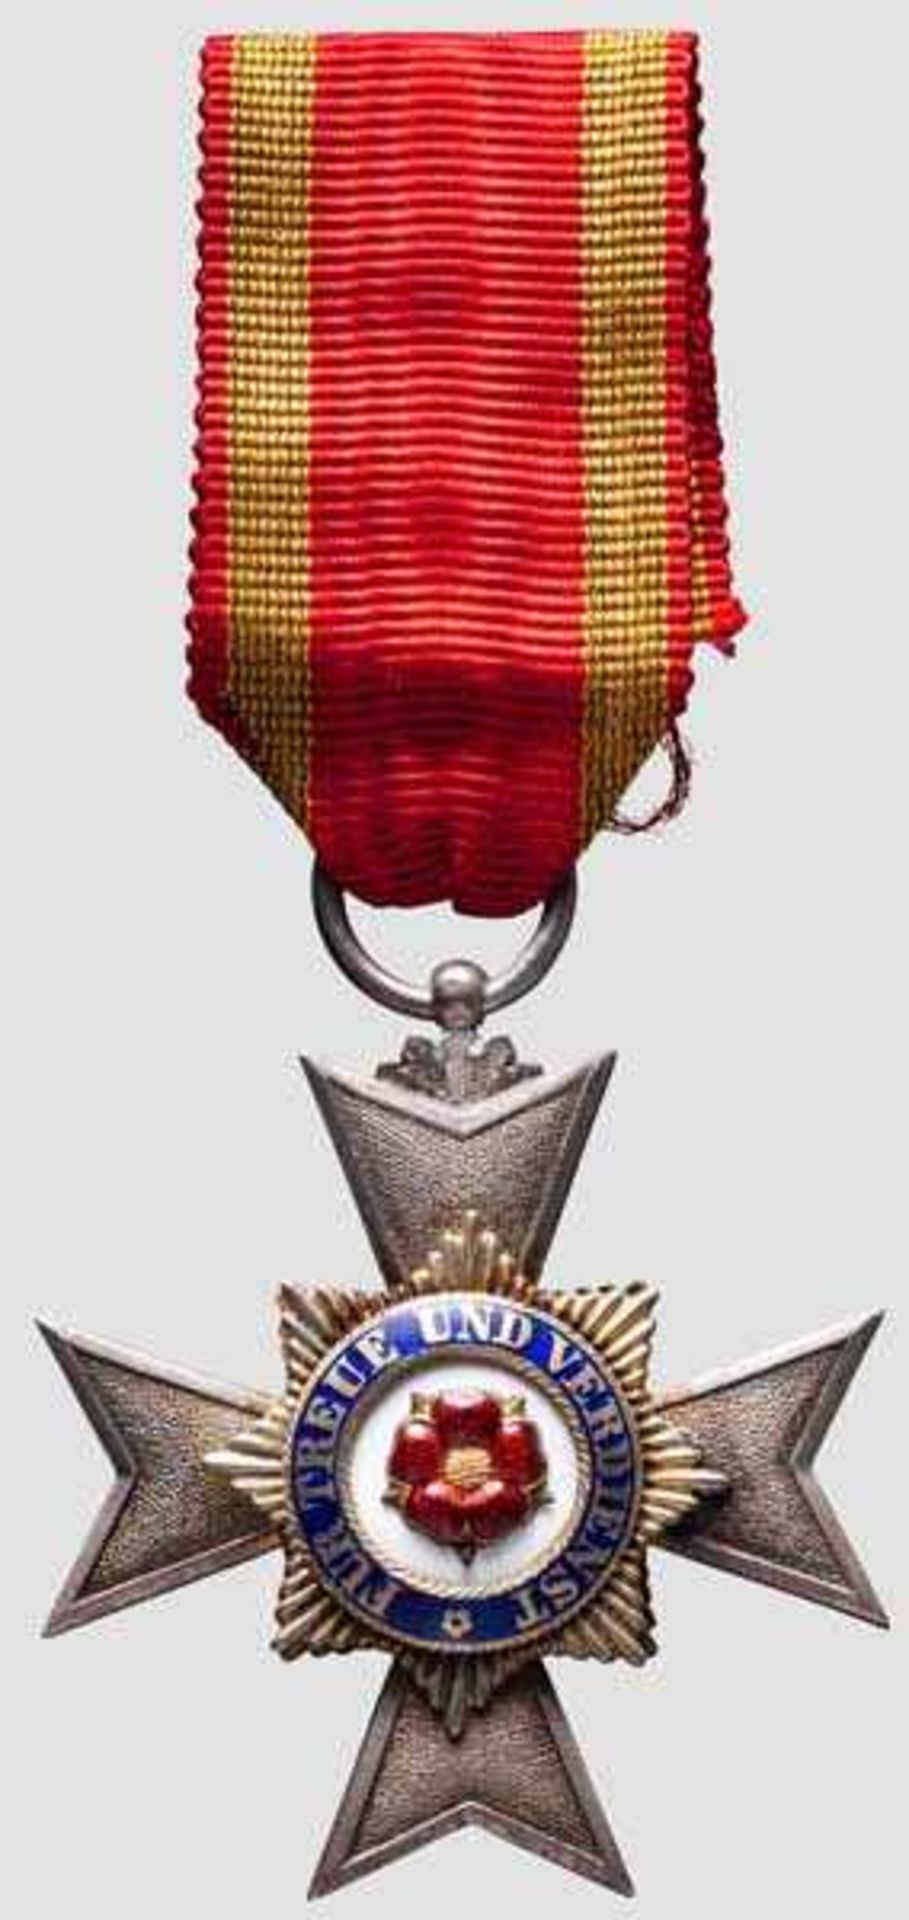 Hausorden des Ehrenkreuzes - Kreuz 4.Klasse, 1. Abteilung Ordenskreuz aus Silber, die Medaillons